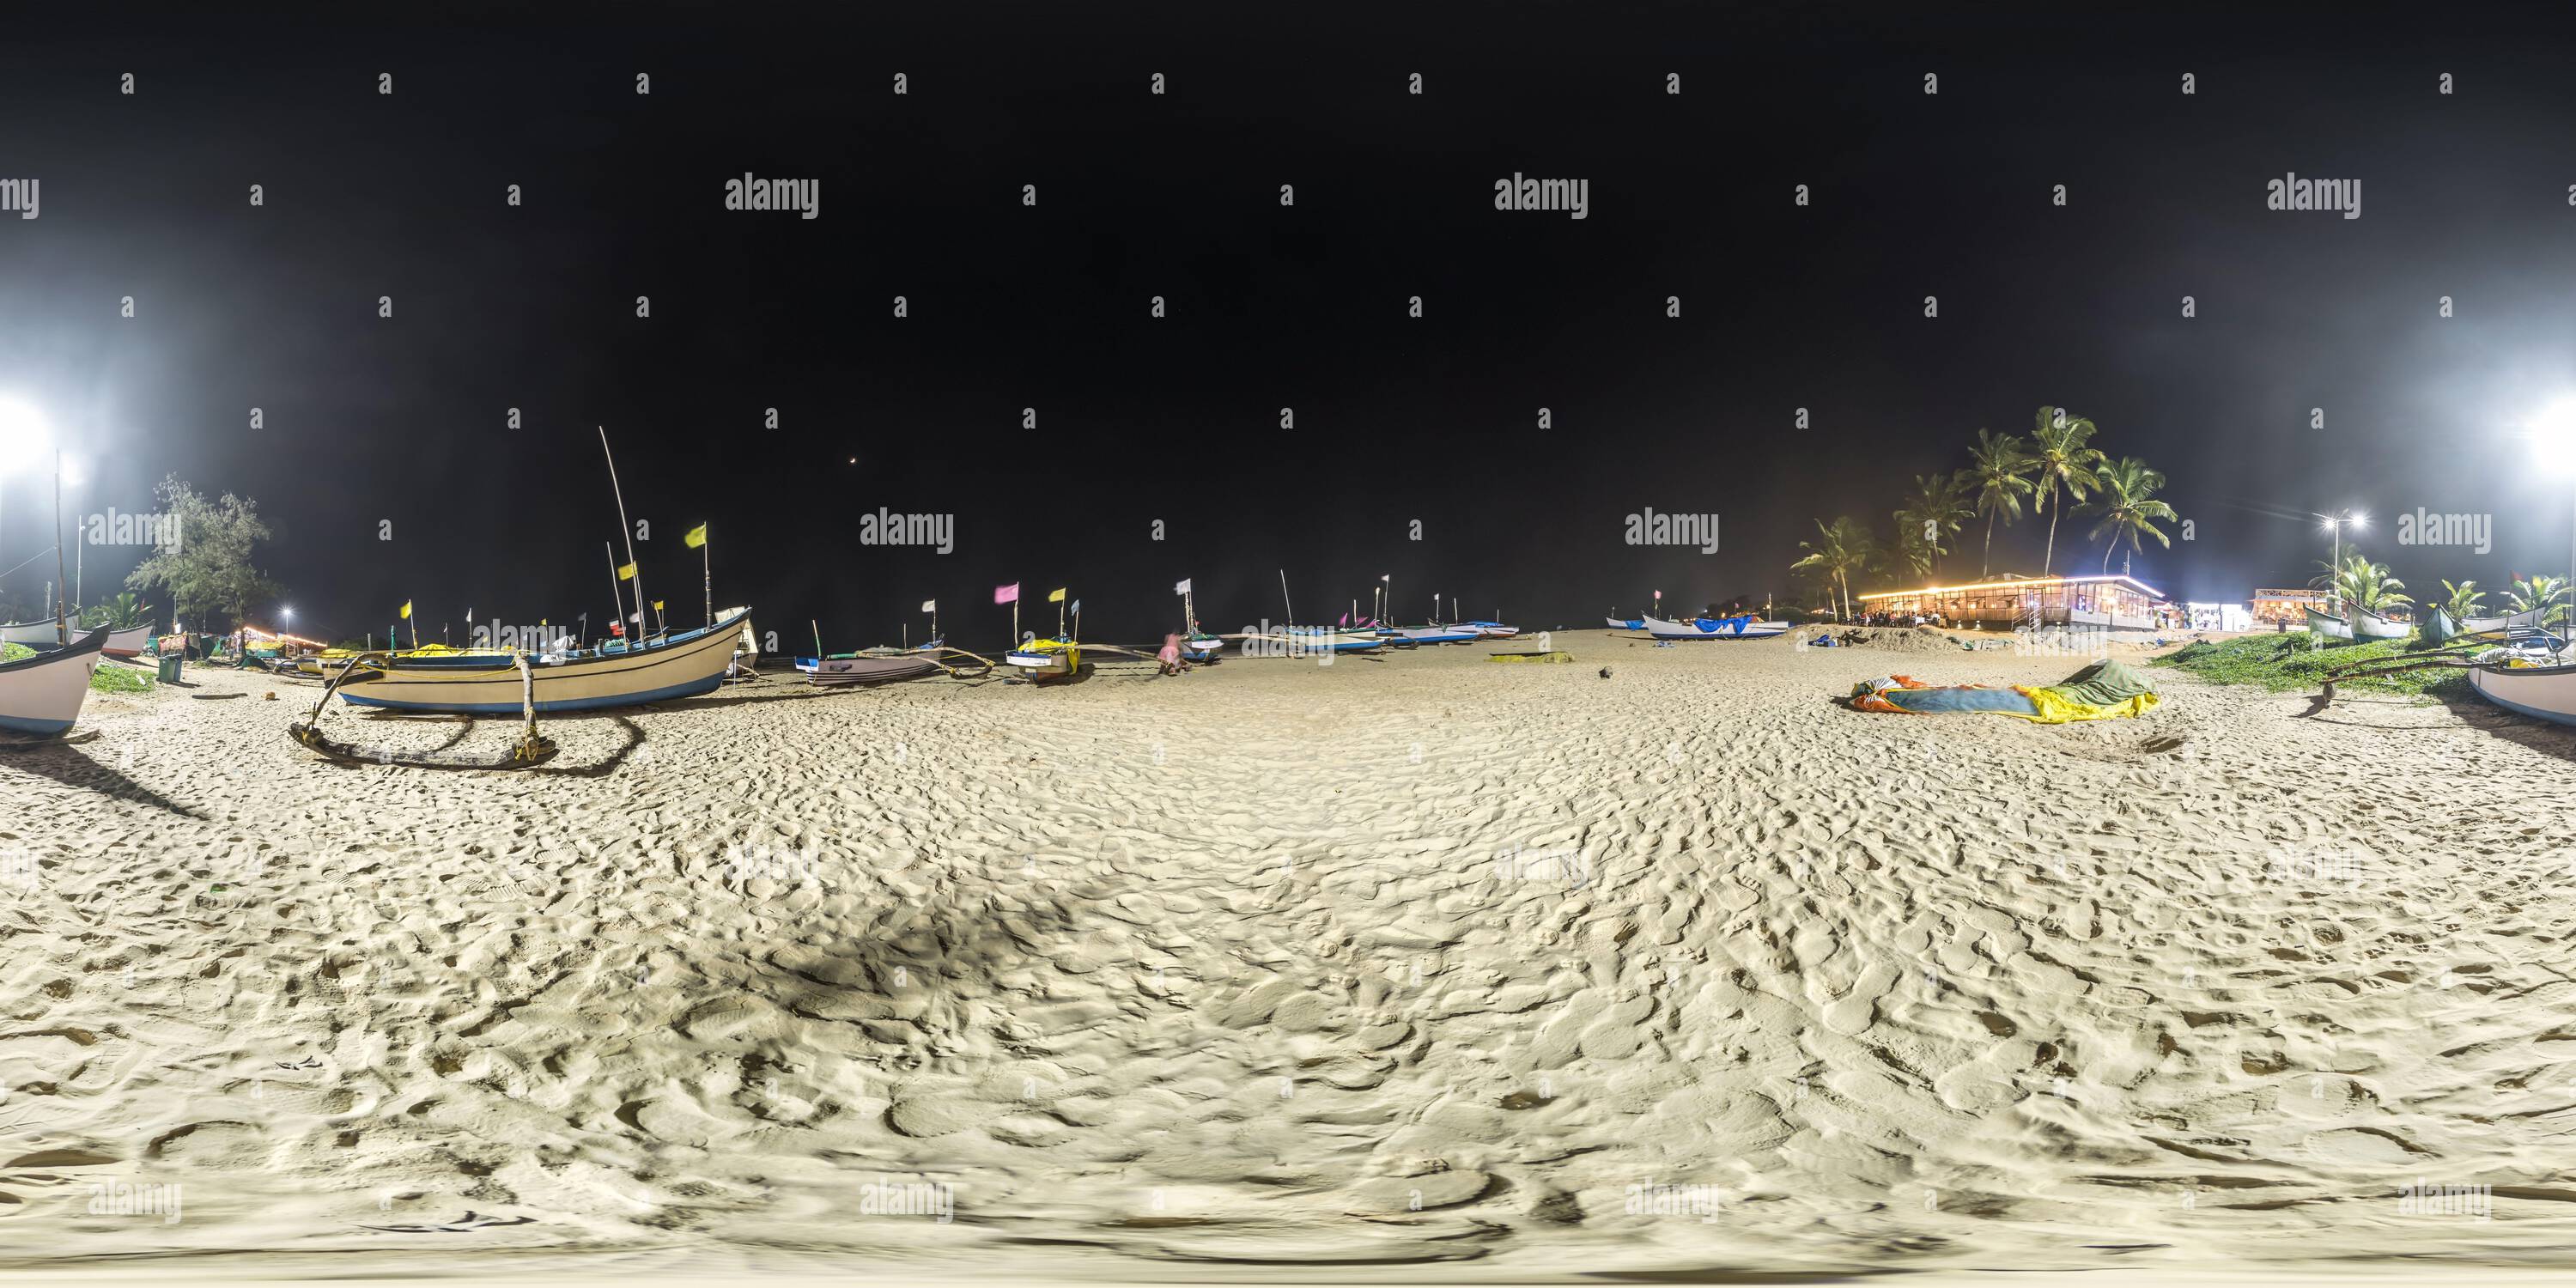 Vue panoramique à 360° de Panorama de nuit sphérique hdr 360 sans couture près des bateaux de pêche sur l'océan en inde en projection équirectangulaire, pour le contenu VR AR,